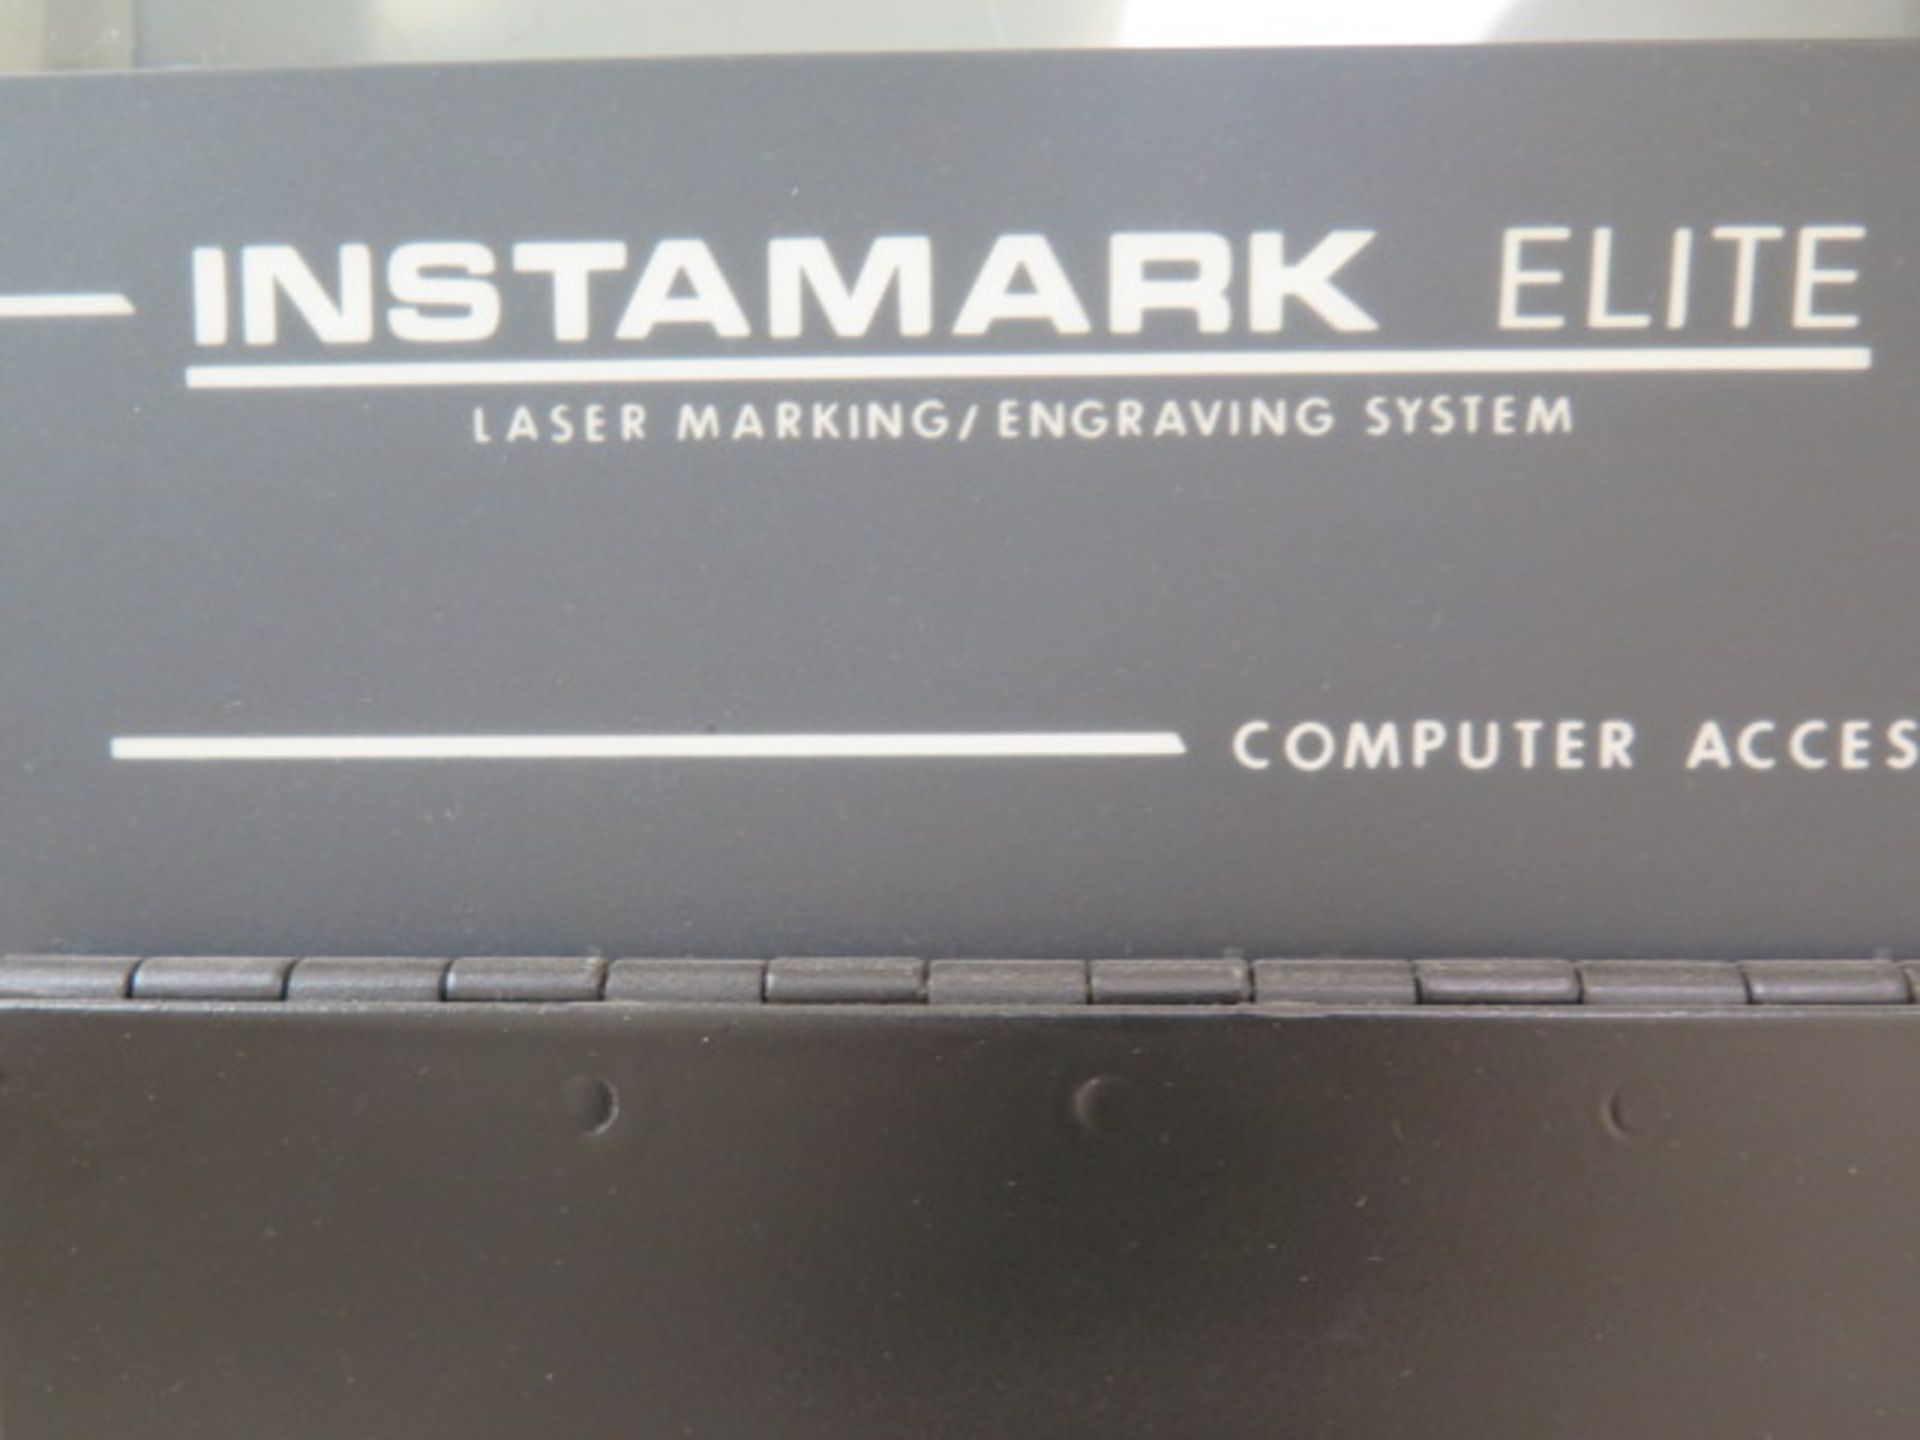 Control Laser I/M Elite “Instamark Elite” Laser Marking / Engraving System s/n 682130 w/ Laser - Image 12 of 14